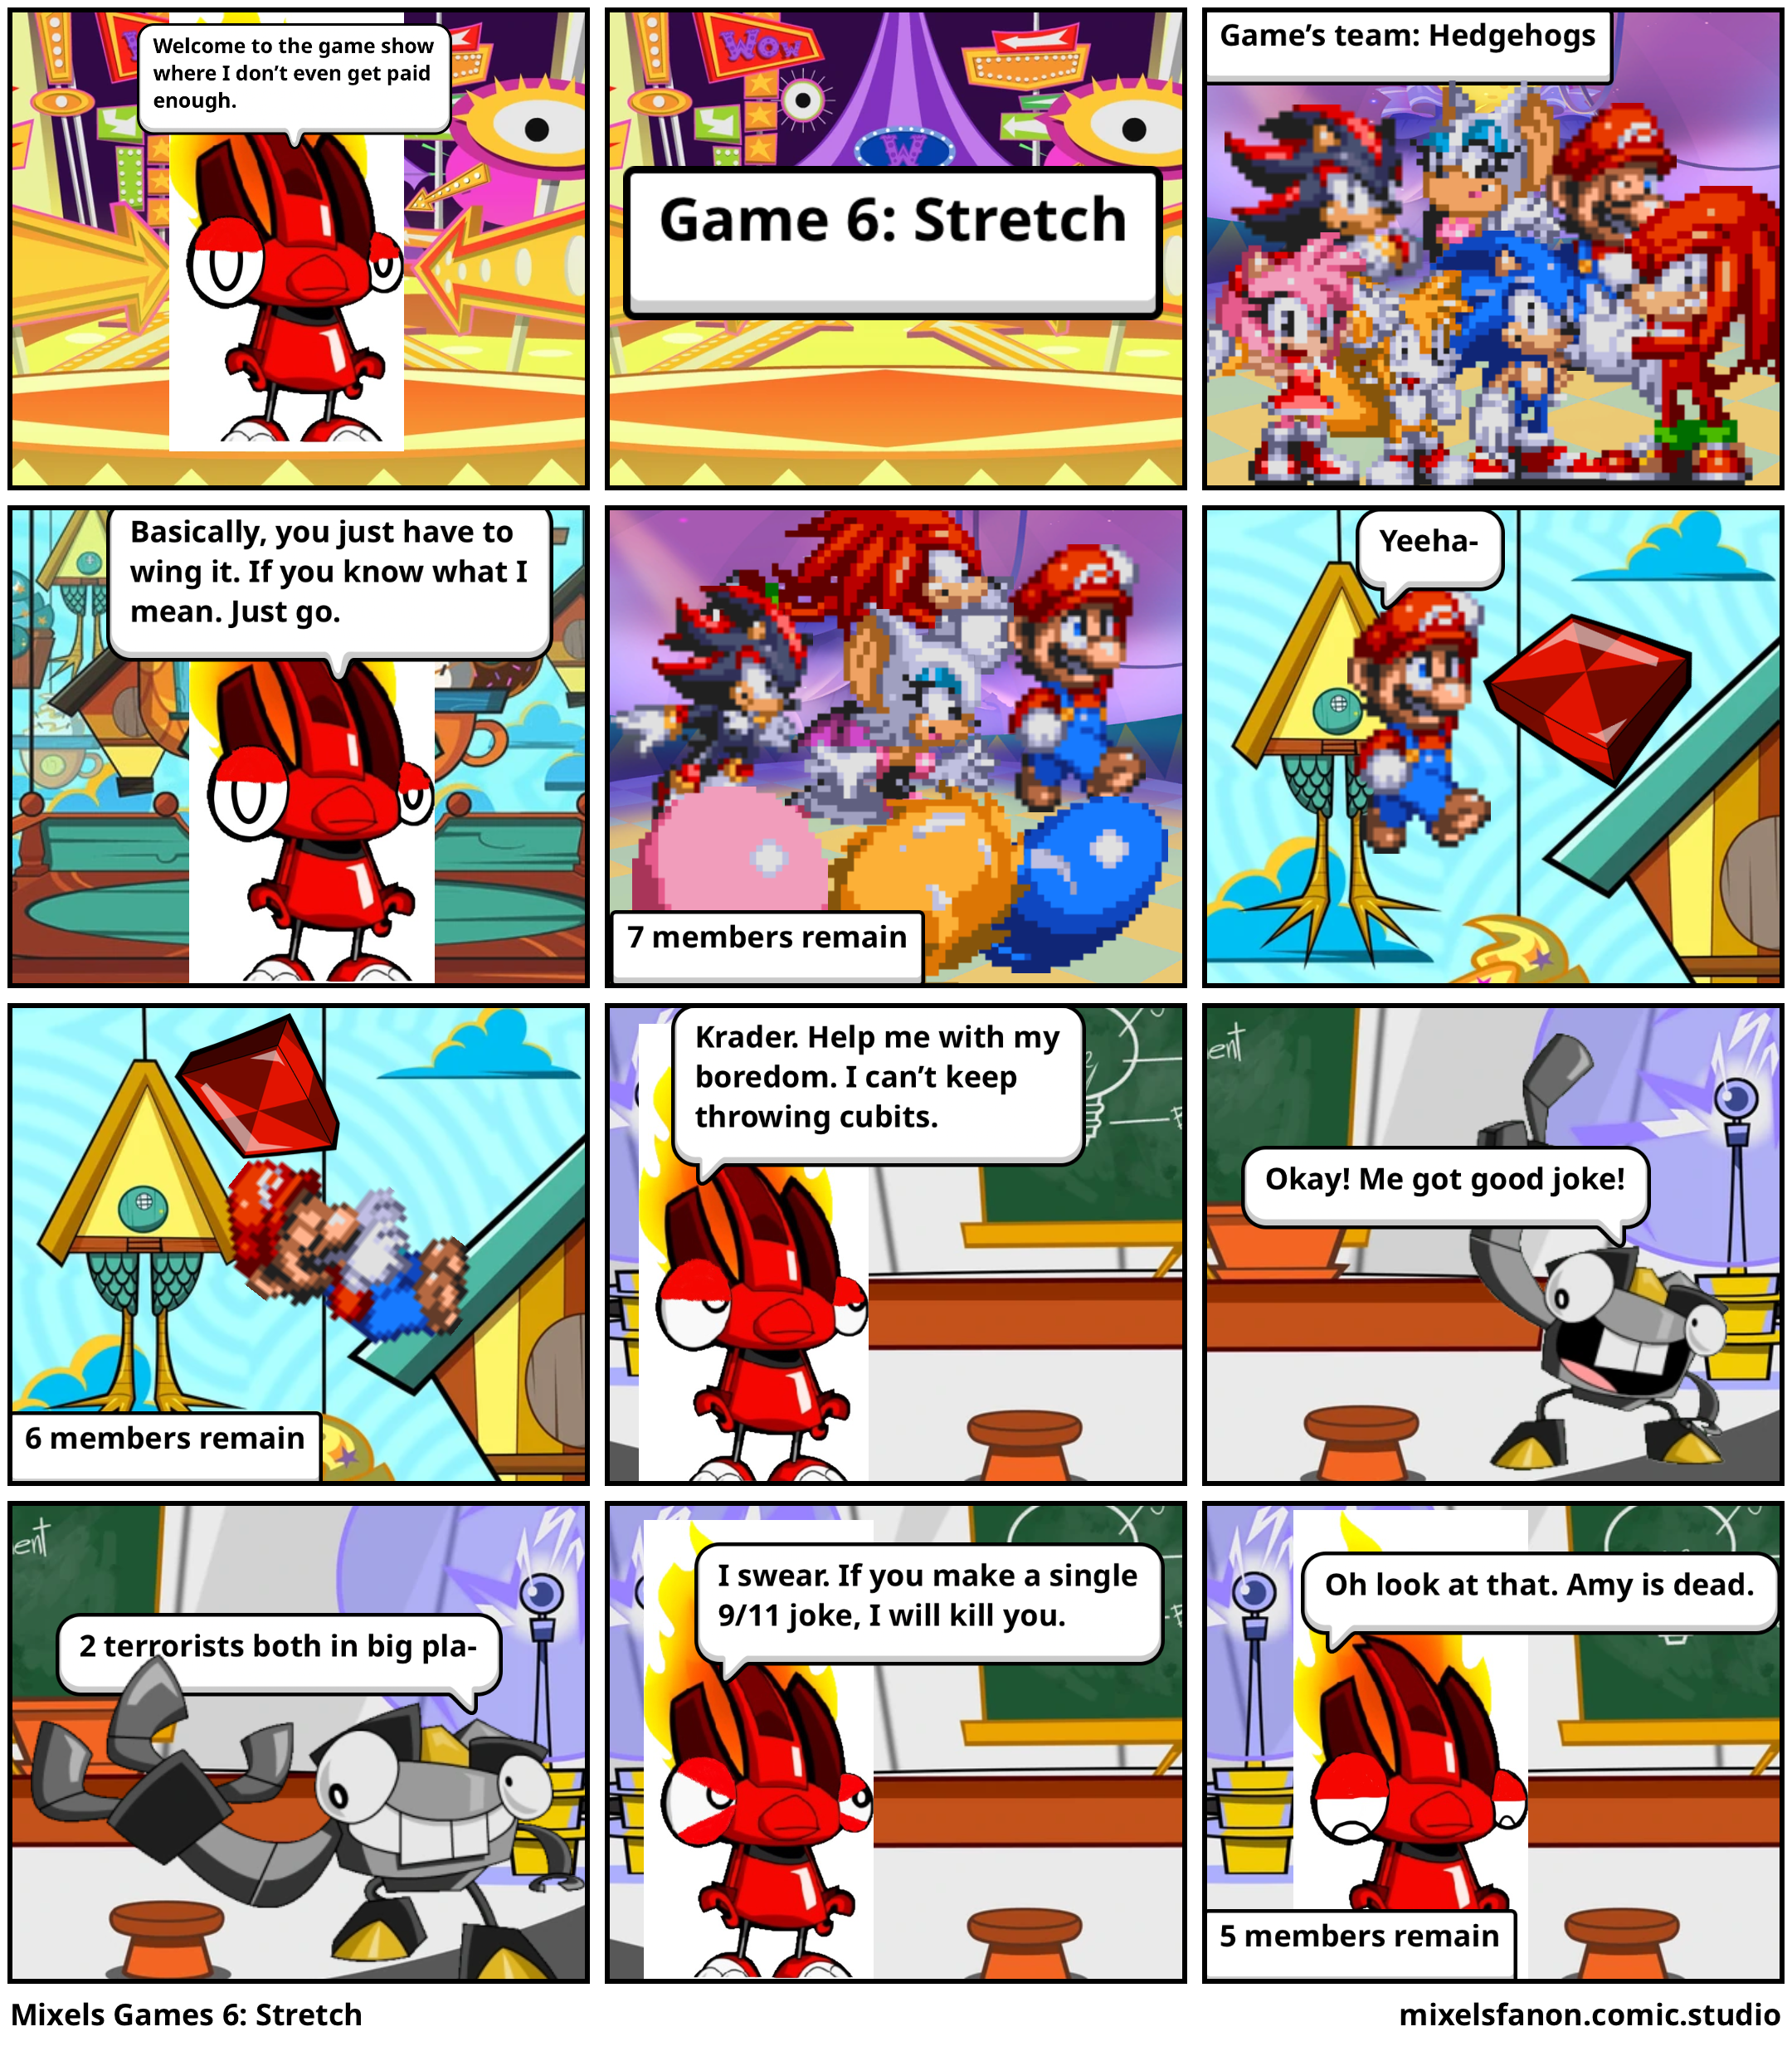 Mixels Games 6: Stretch